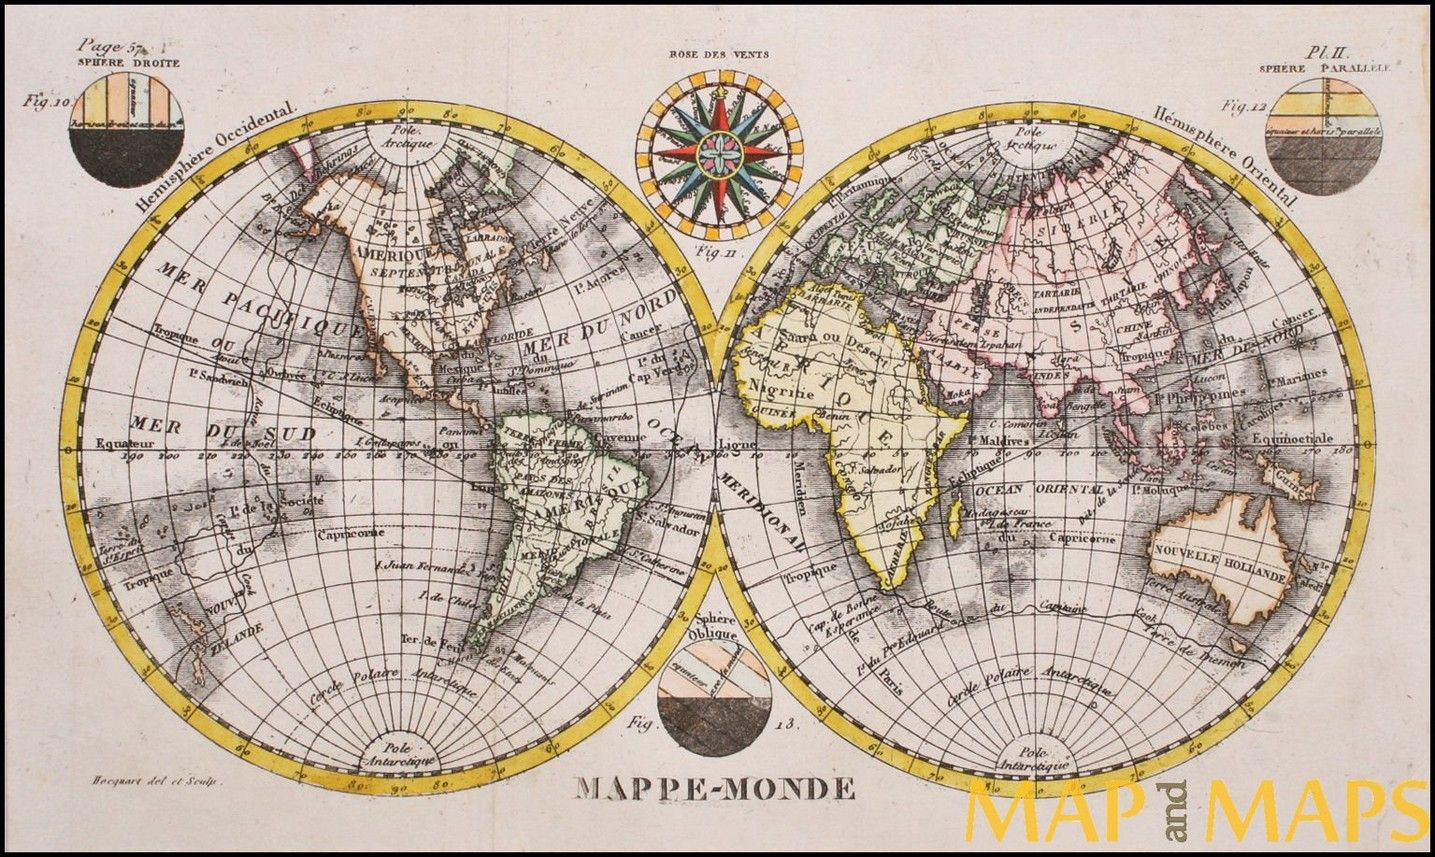 Mappemonde Globe Terrestre Et Cartes tout Mappemonde A Imprimer